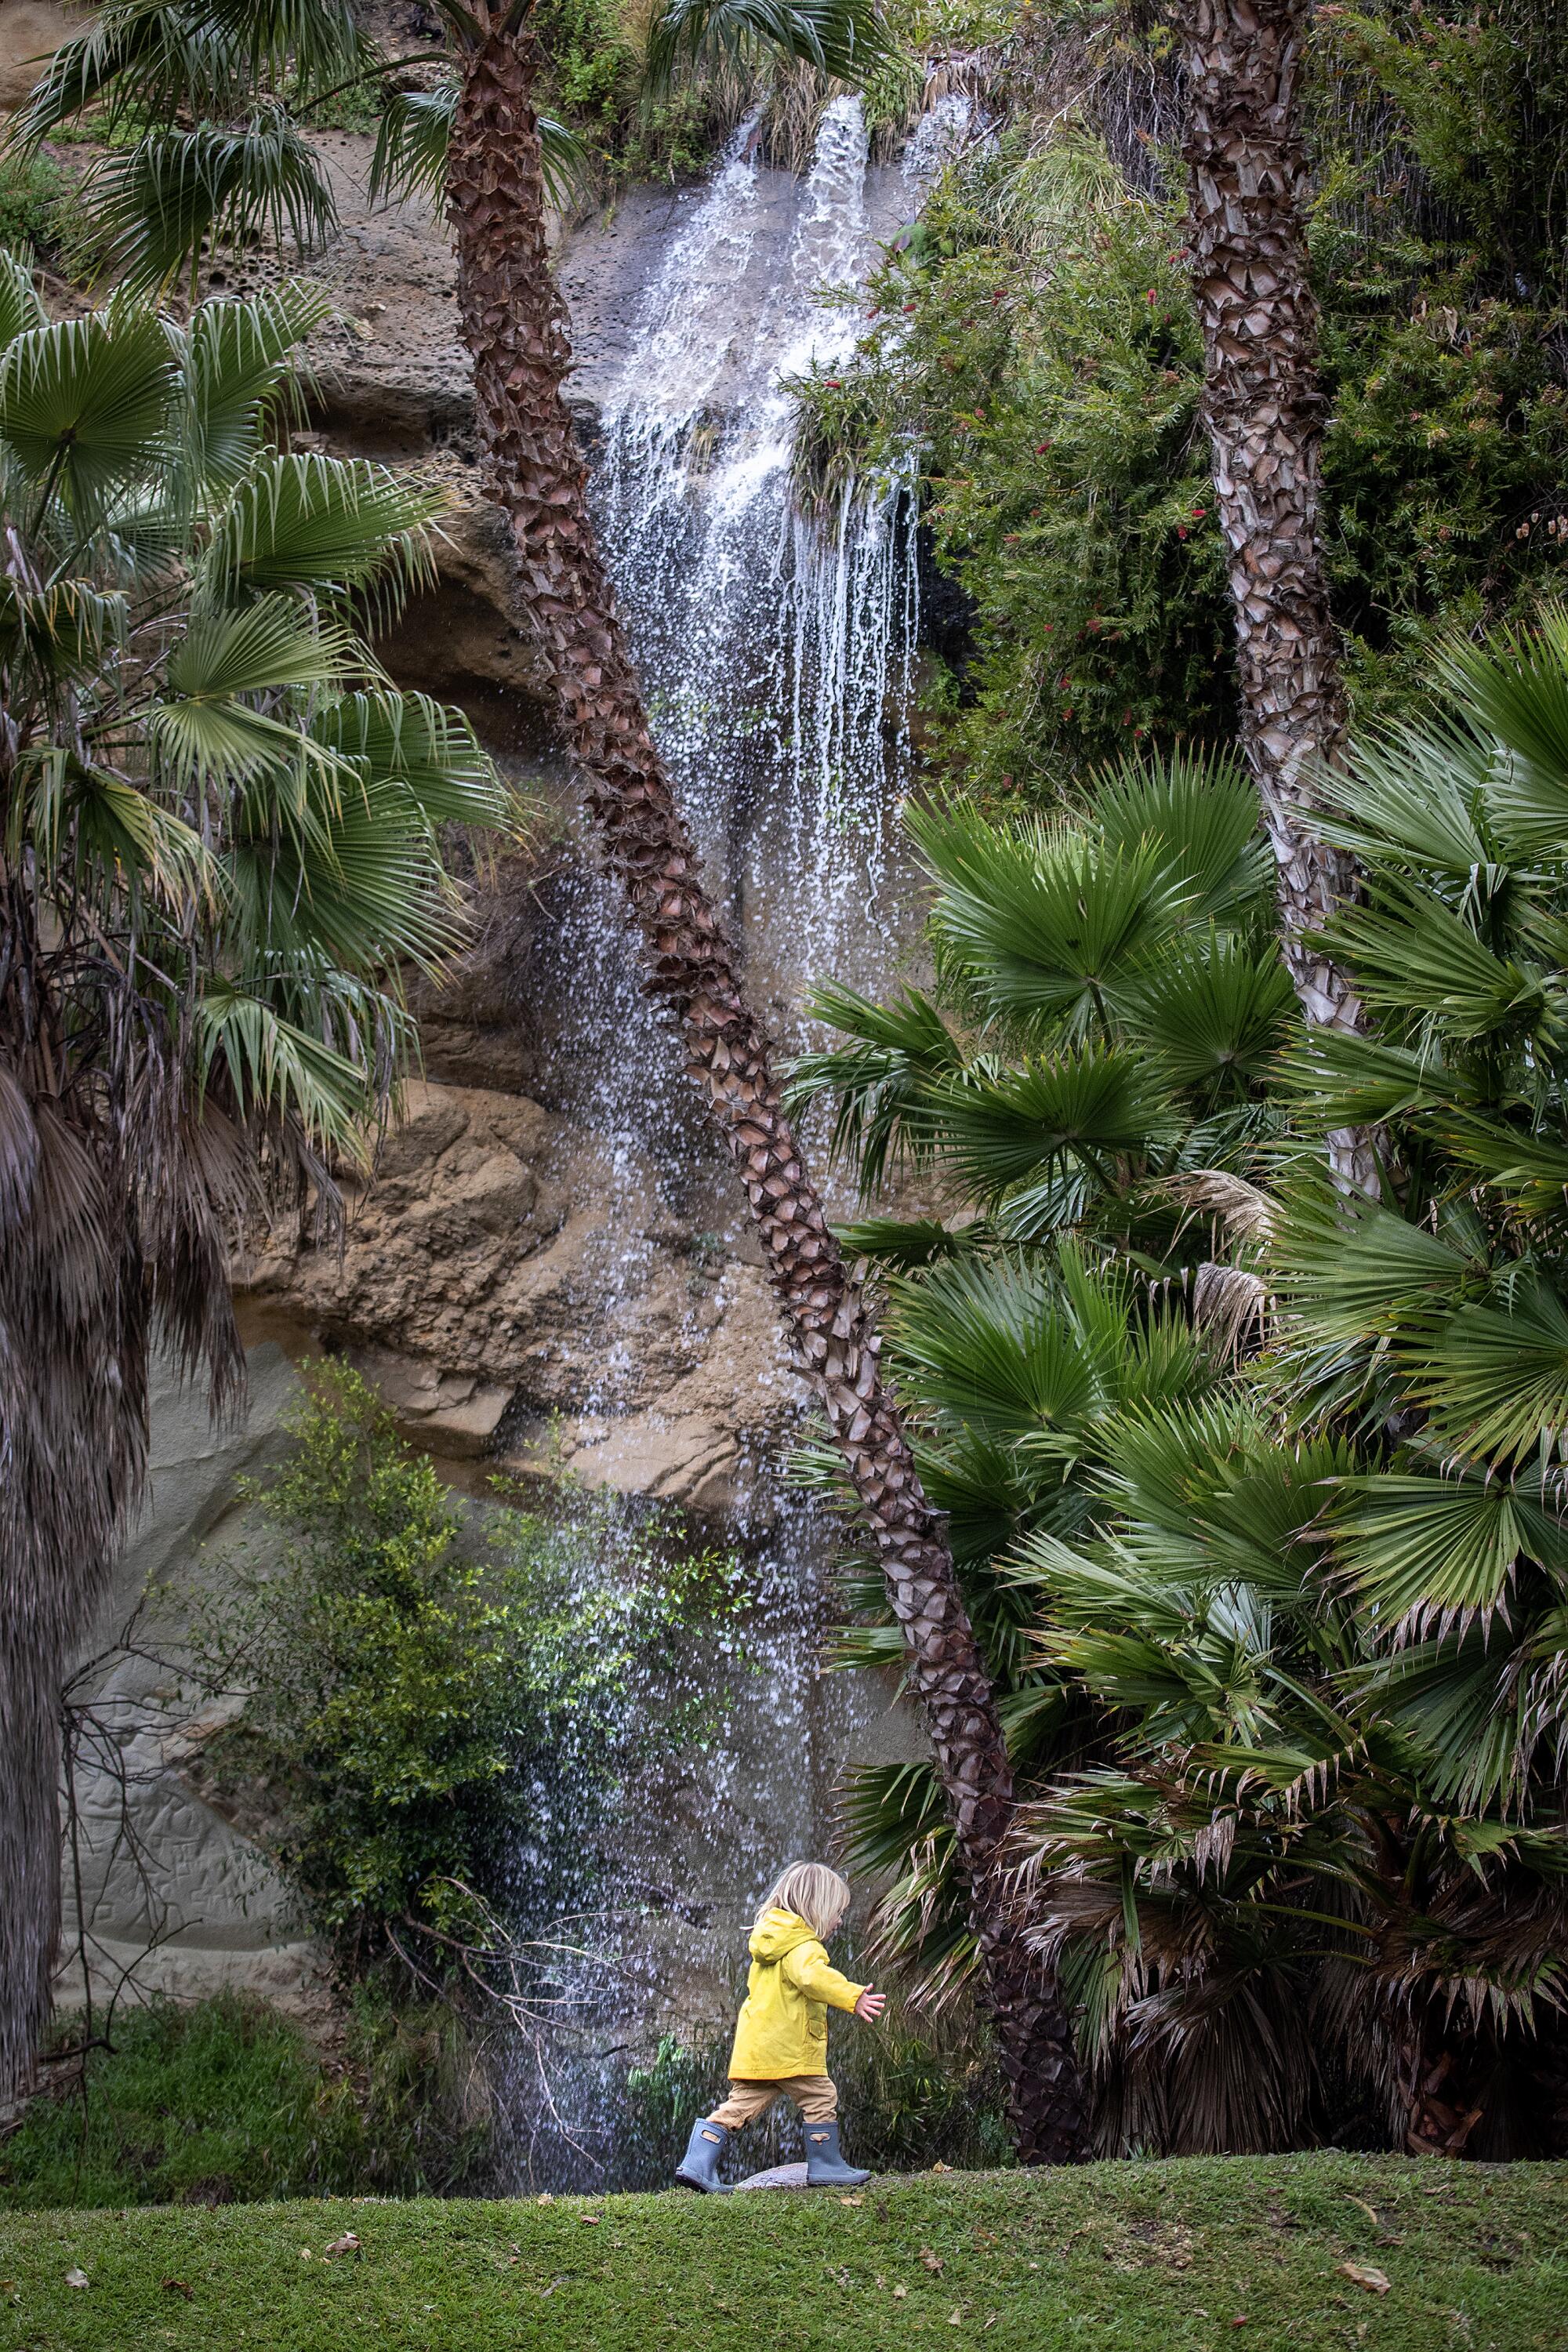 کودکی با بارانی زرد زیر یک آبشار کوچک راه می رود. 